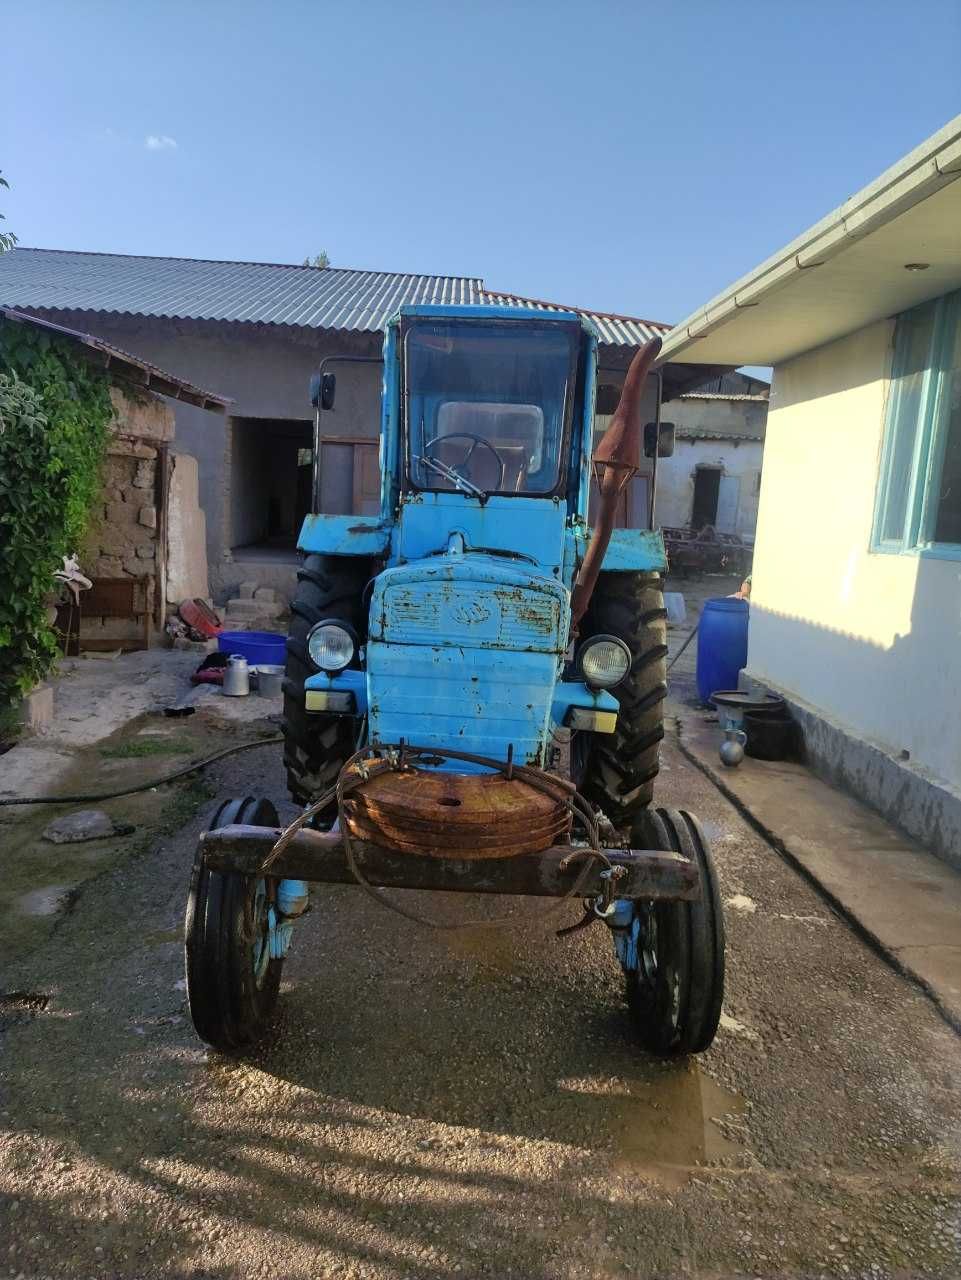 Traktor sotiladi barcha narsalari bilan